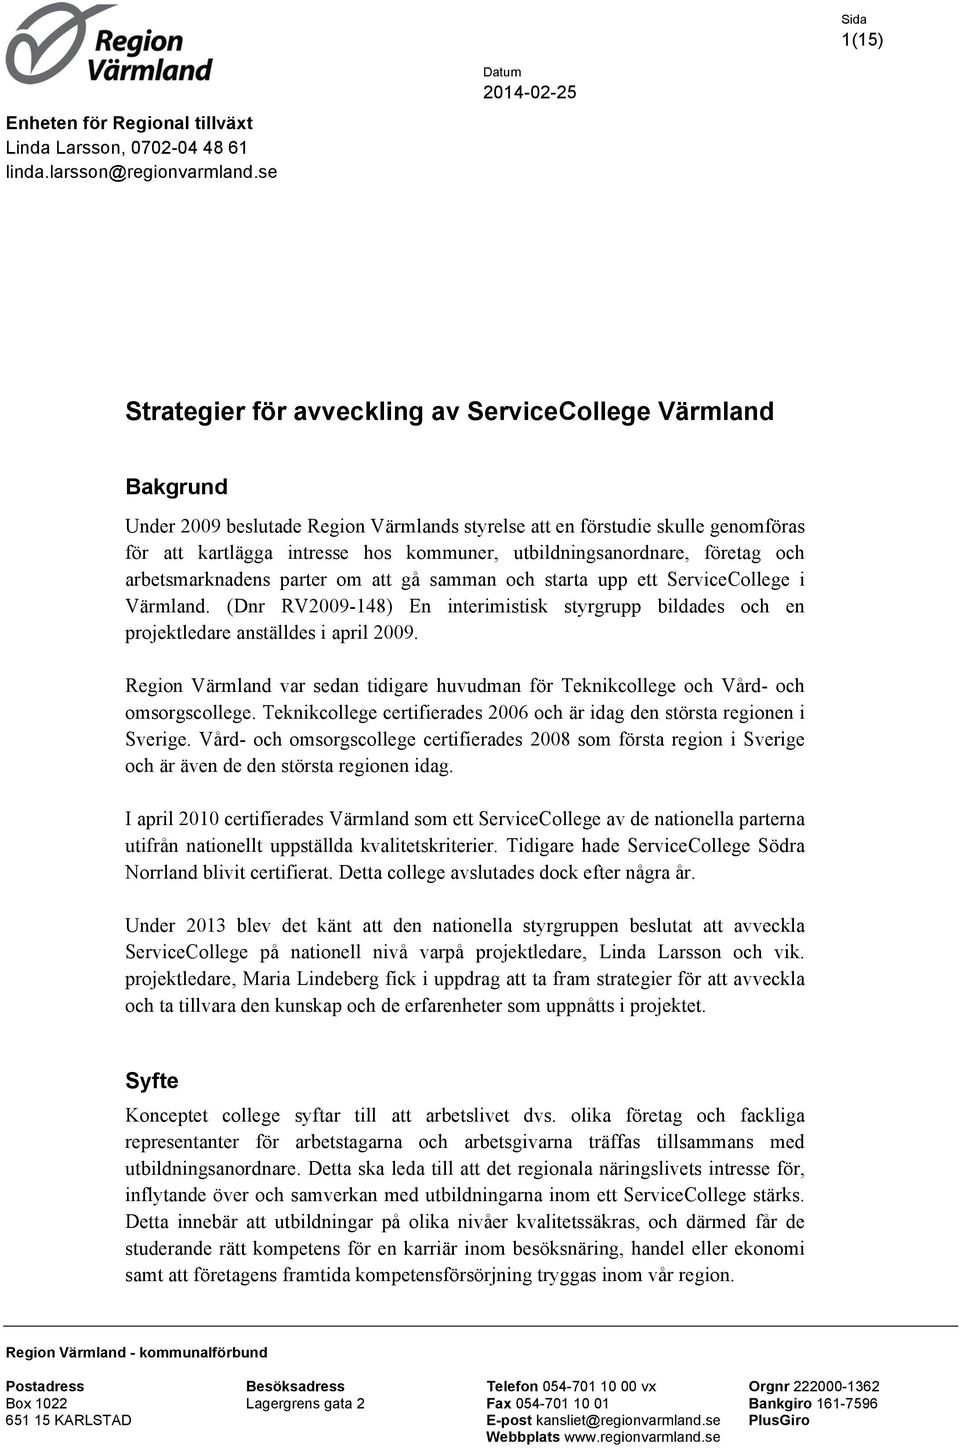 utbildningsanordnare, företag och arbetsmarknadens parter om att gå samman och starta upp ett ServiceCollege i Värmland.